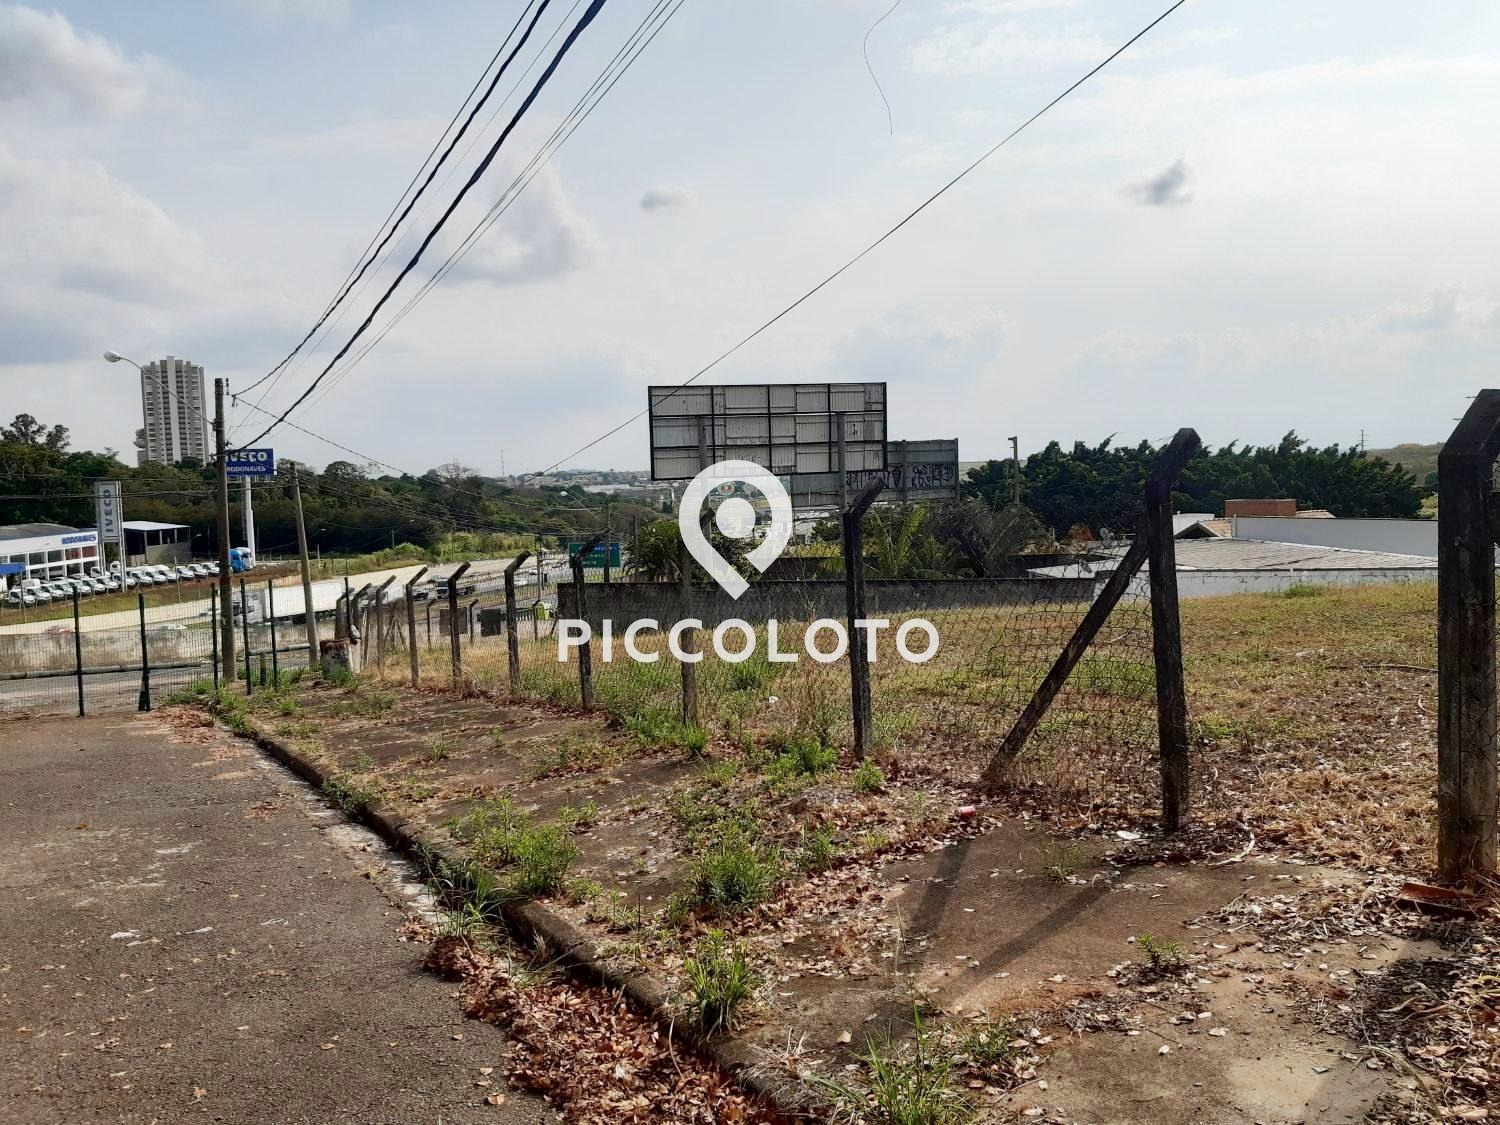 Piccoloto - Terreno à venda no Parque das Universidades em Campinas